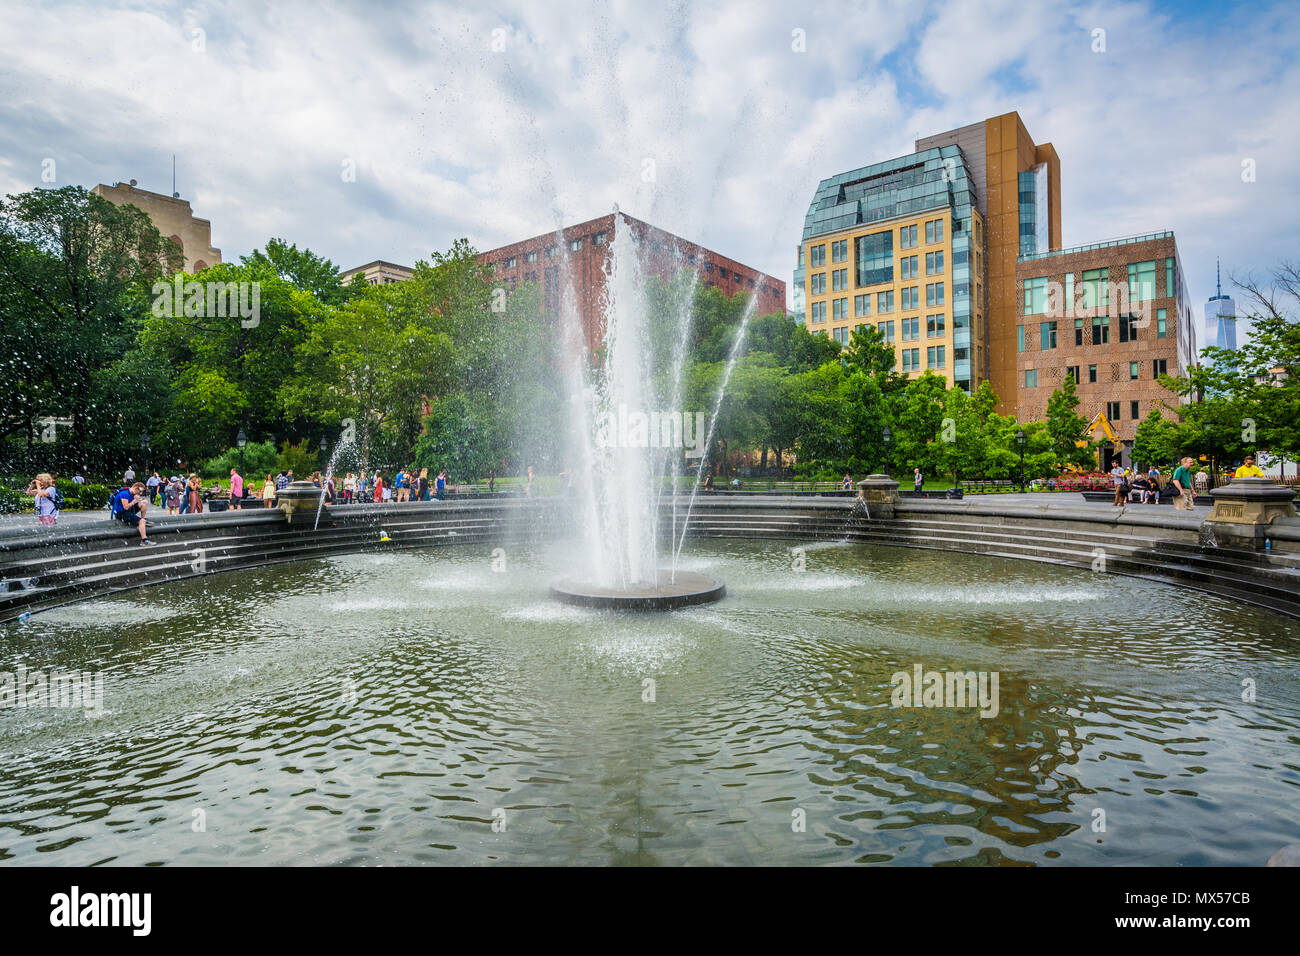 La fontaine à Washington Square Park à Greenwich Village, Manhattan, New York. Banque D'Images